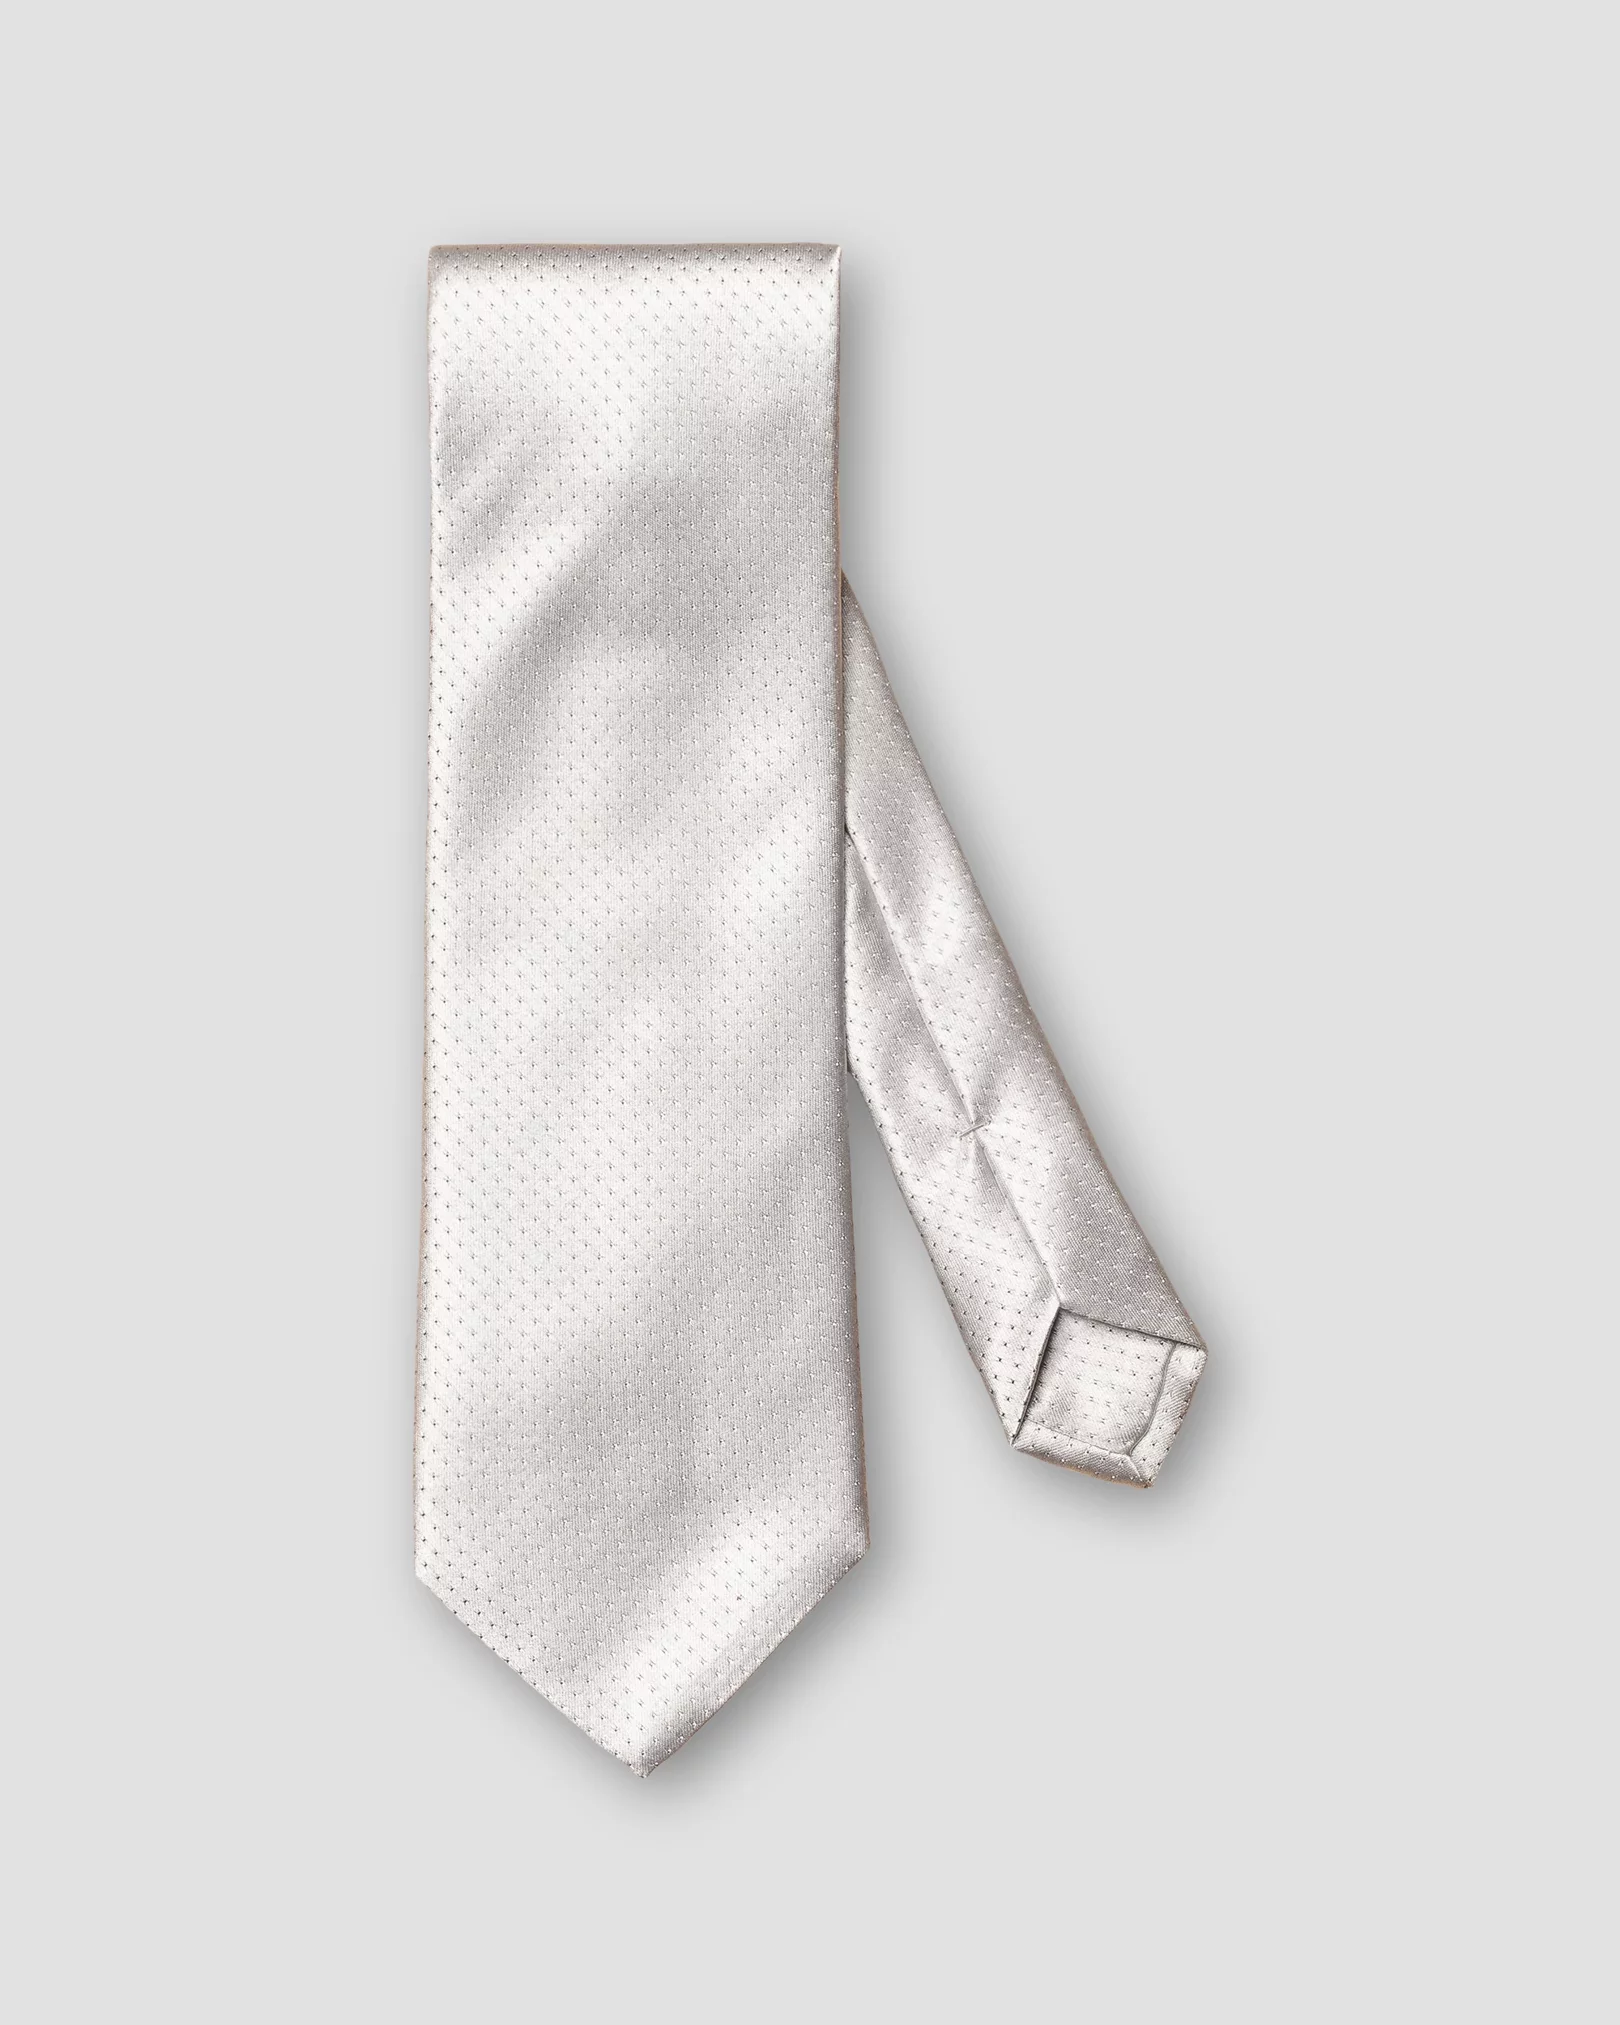 Eton - light grey pin dot tie